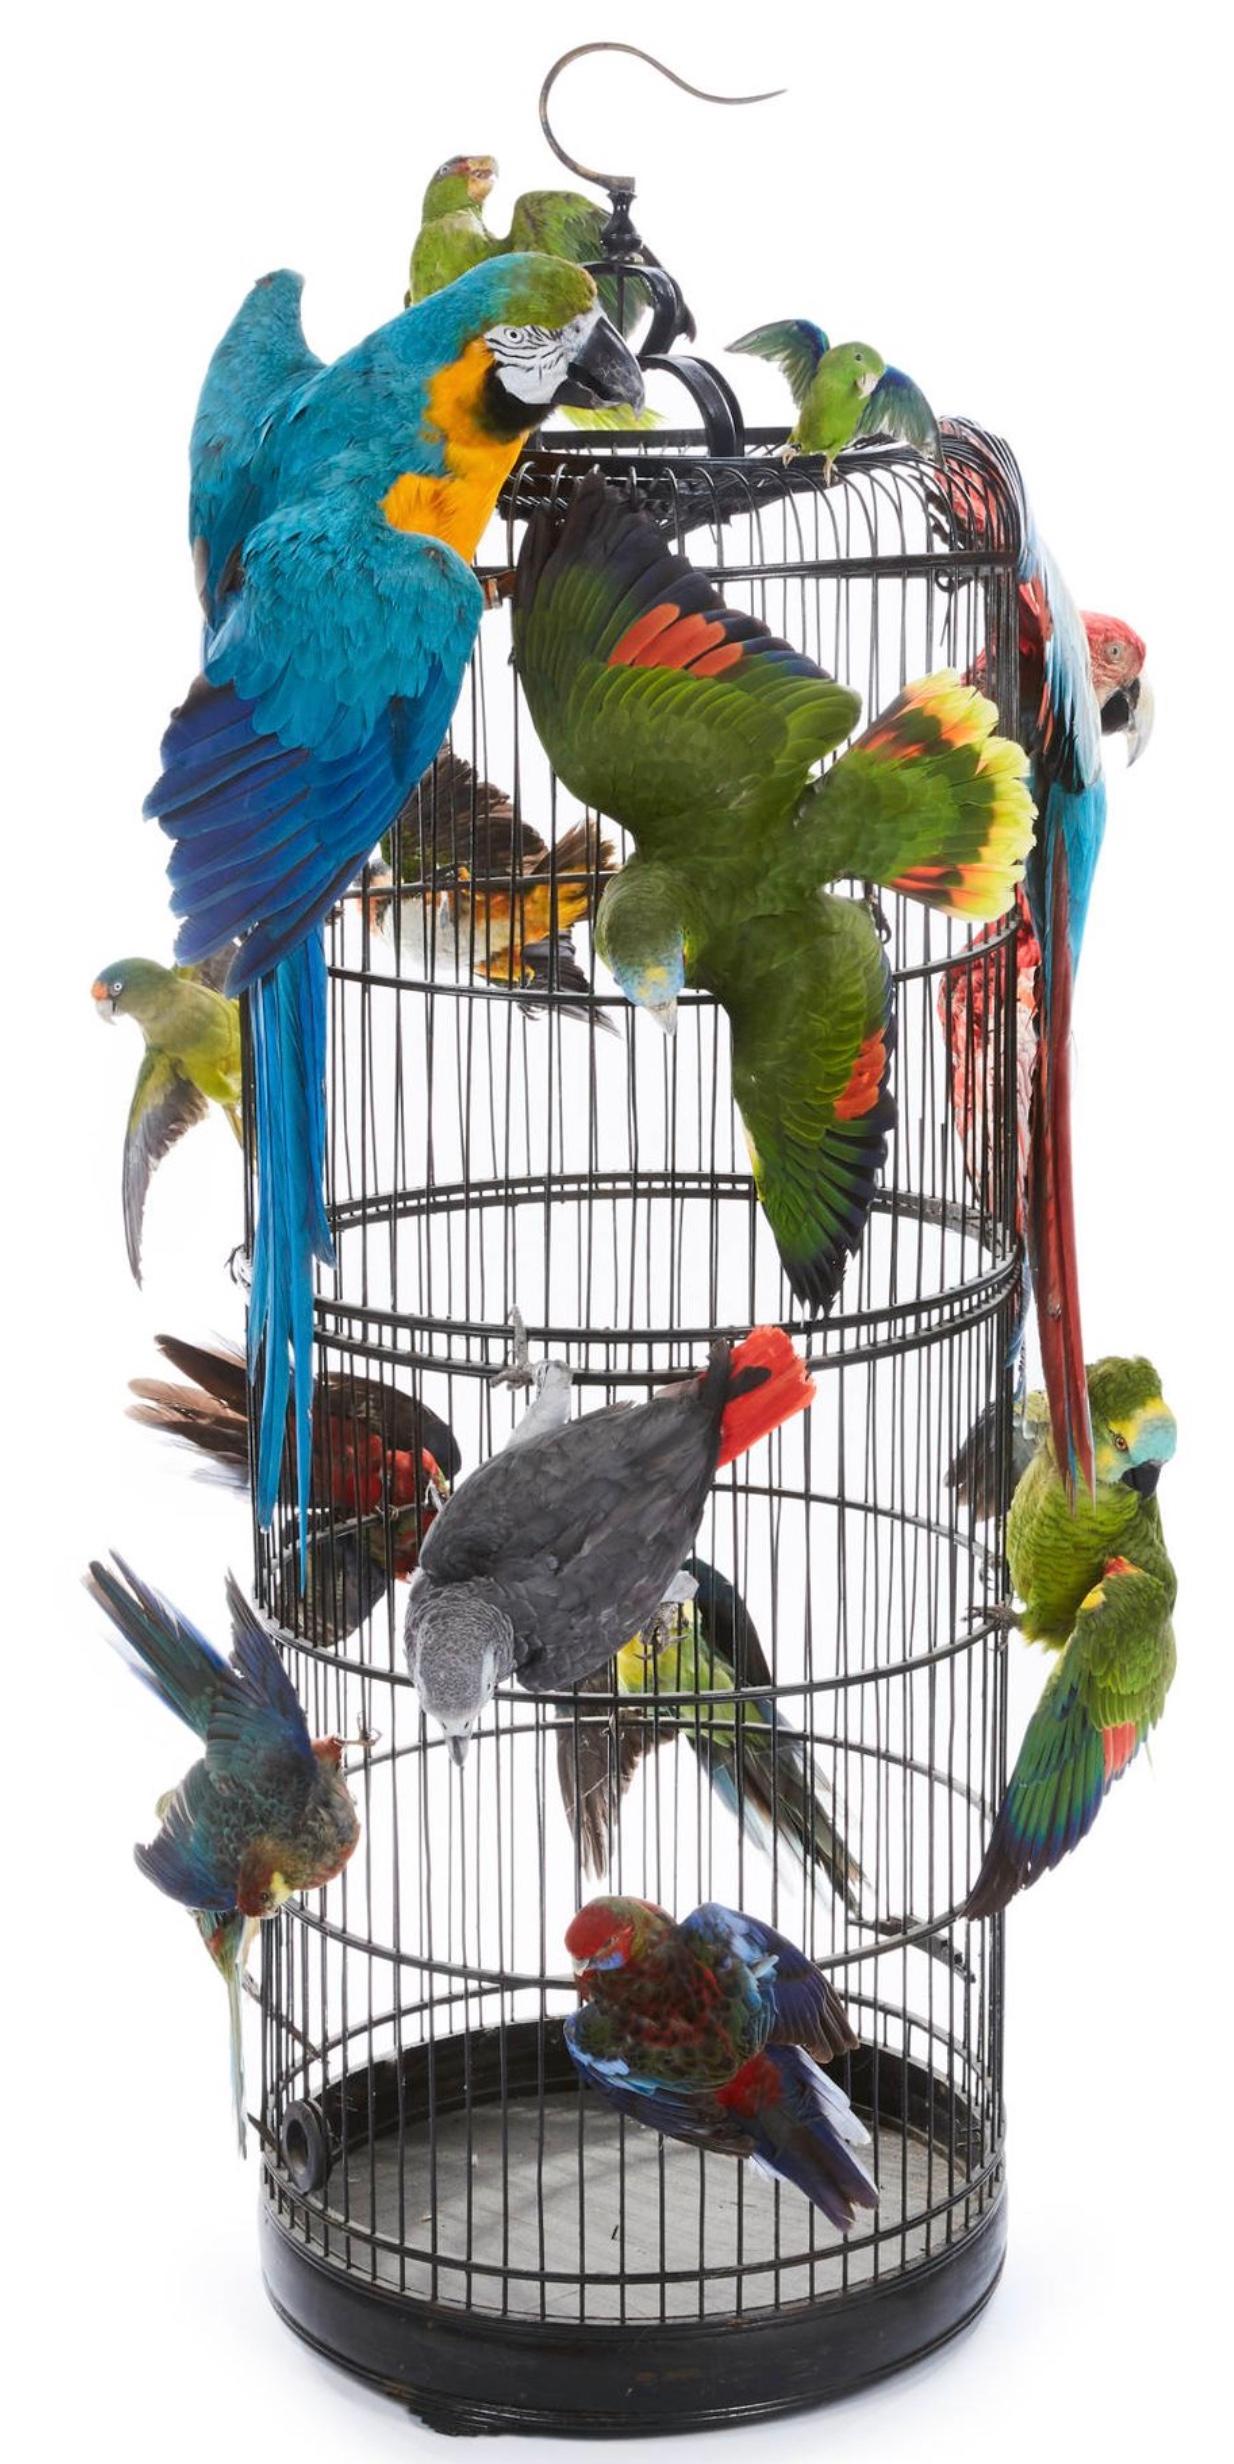 Quatorze magnifiques oiseaux exotiques perchés à l'extérieur d'une grande cage ronde en métal.
Hauteur totale : 1,57 m, largeur : 1 m.
Amazone à front blanc, toui à lunettes, ara bleu et jaune, caïque maïpourri, deux amazones à front bleu, ara